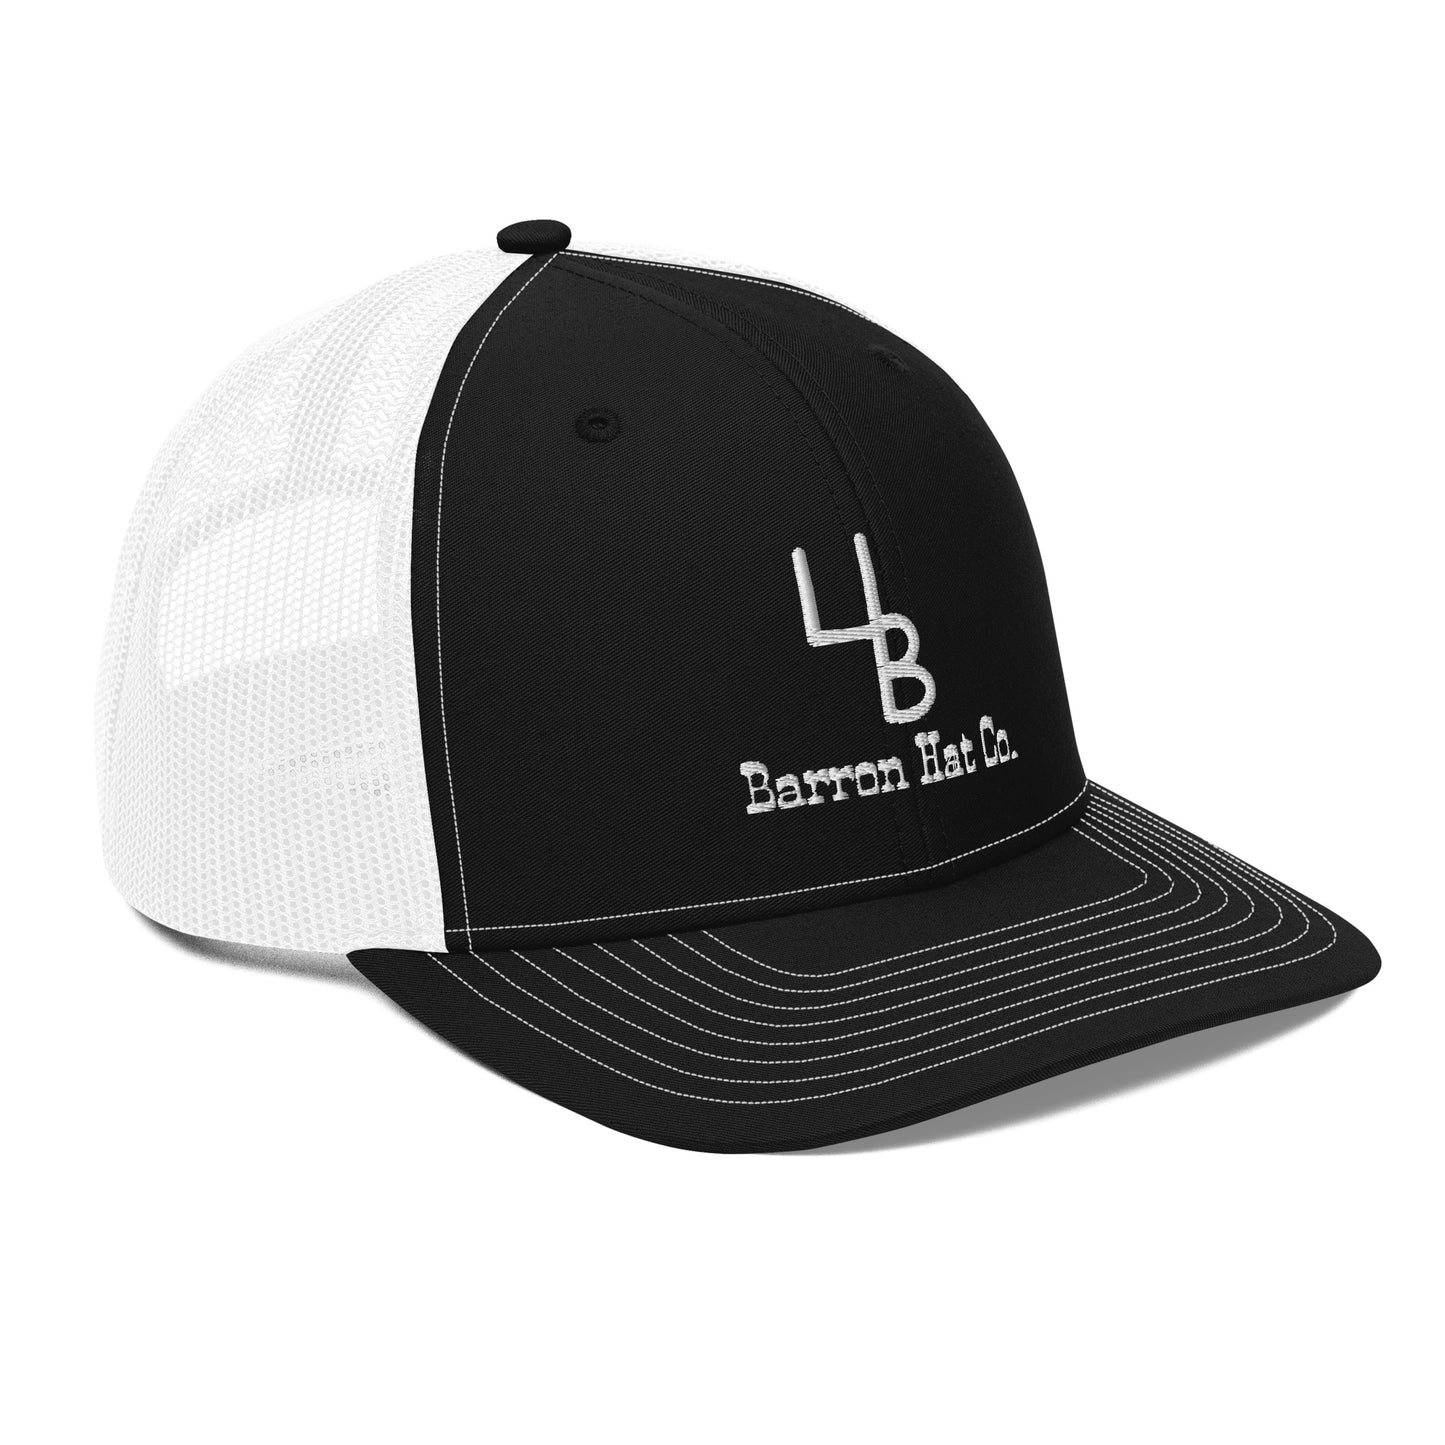 Centered Logo Trucker Hat